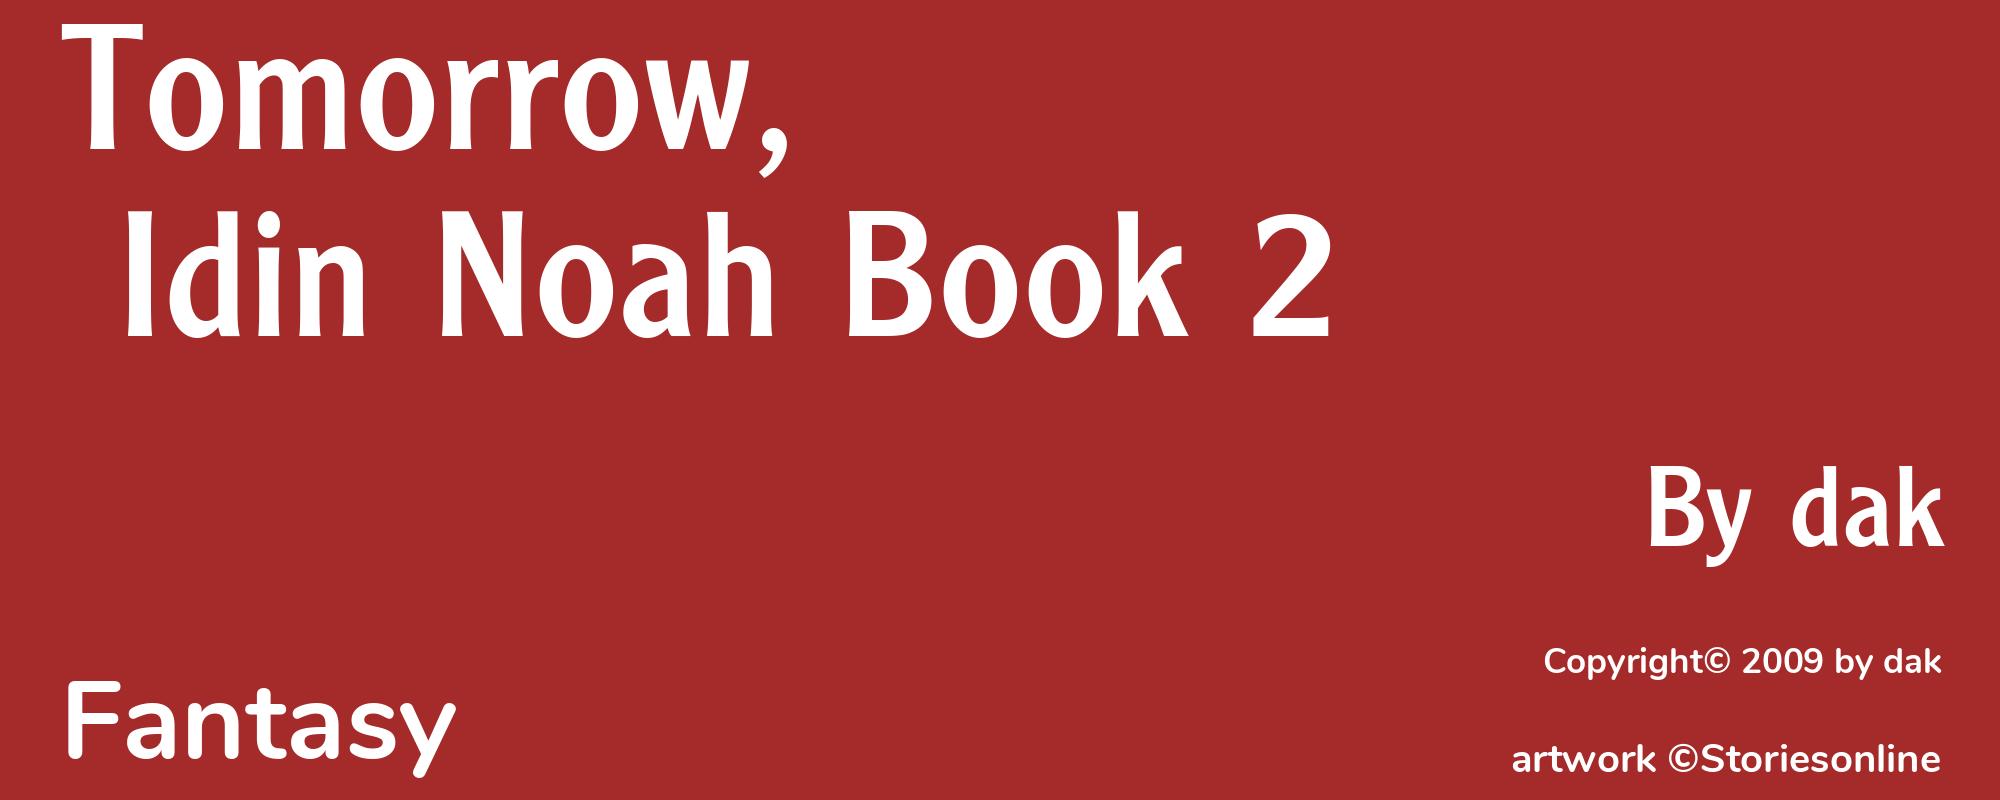 Tomorrow, Idin Noah Book 2 - Cover